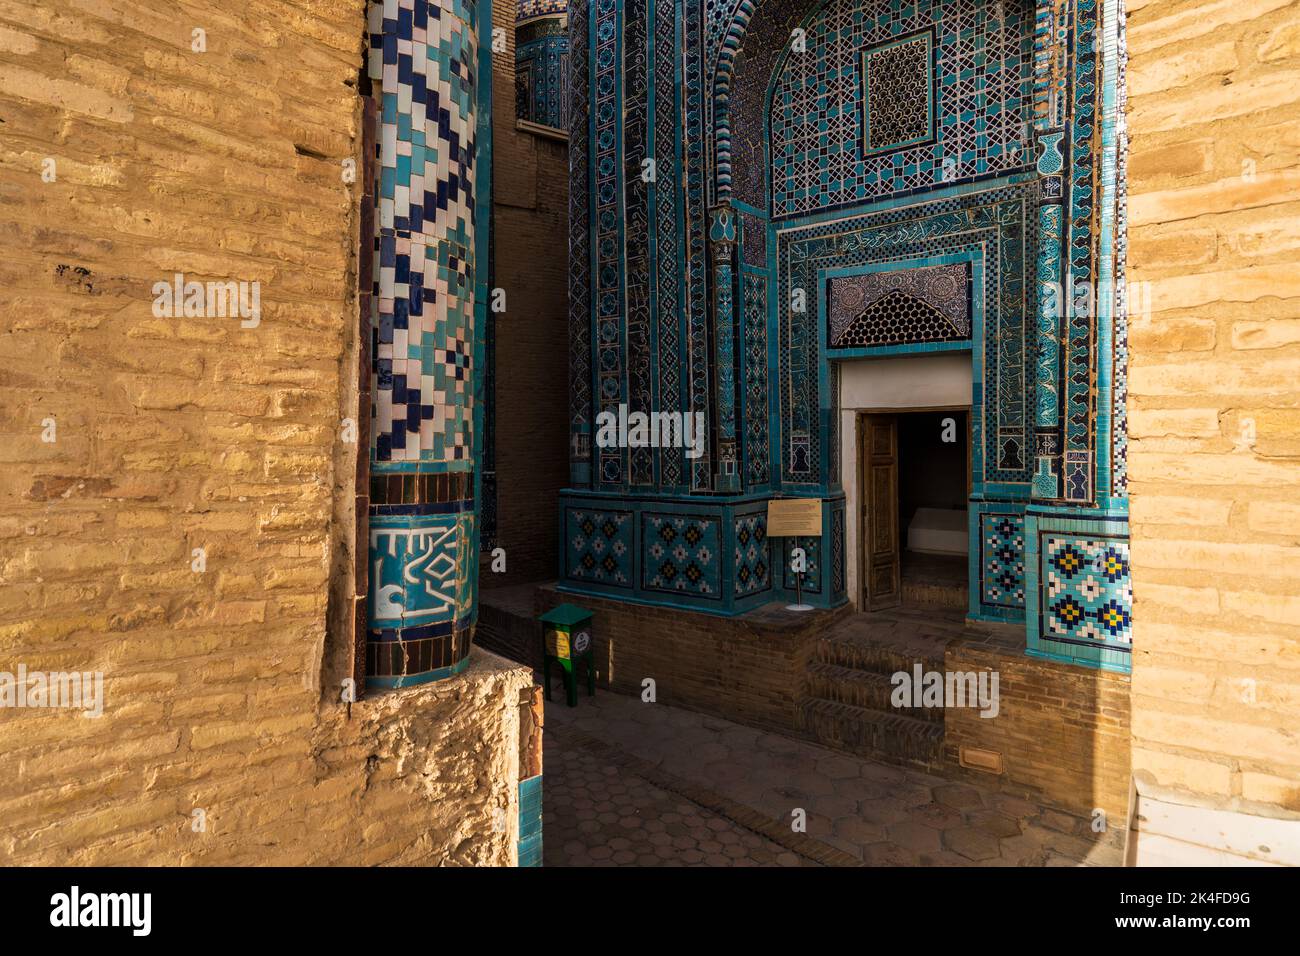 Façades carrelées de bleu et arches du mausolée Shah-i-Zinda au coucher du soleil, Samarkand Banque D'Images